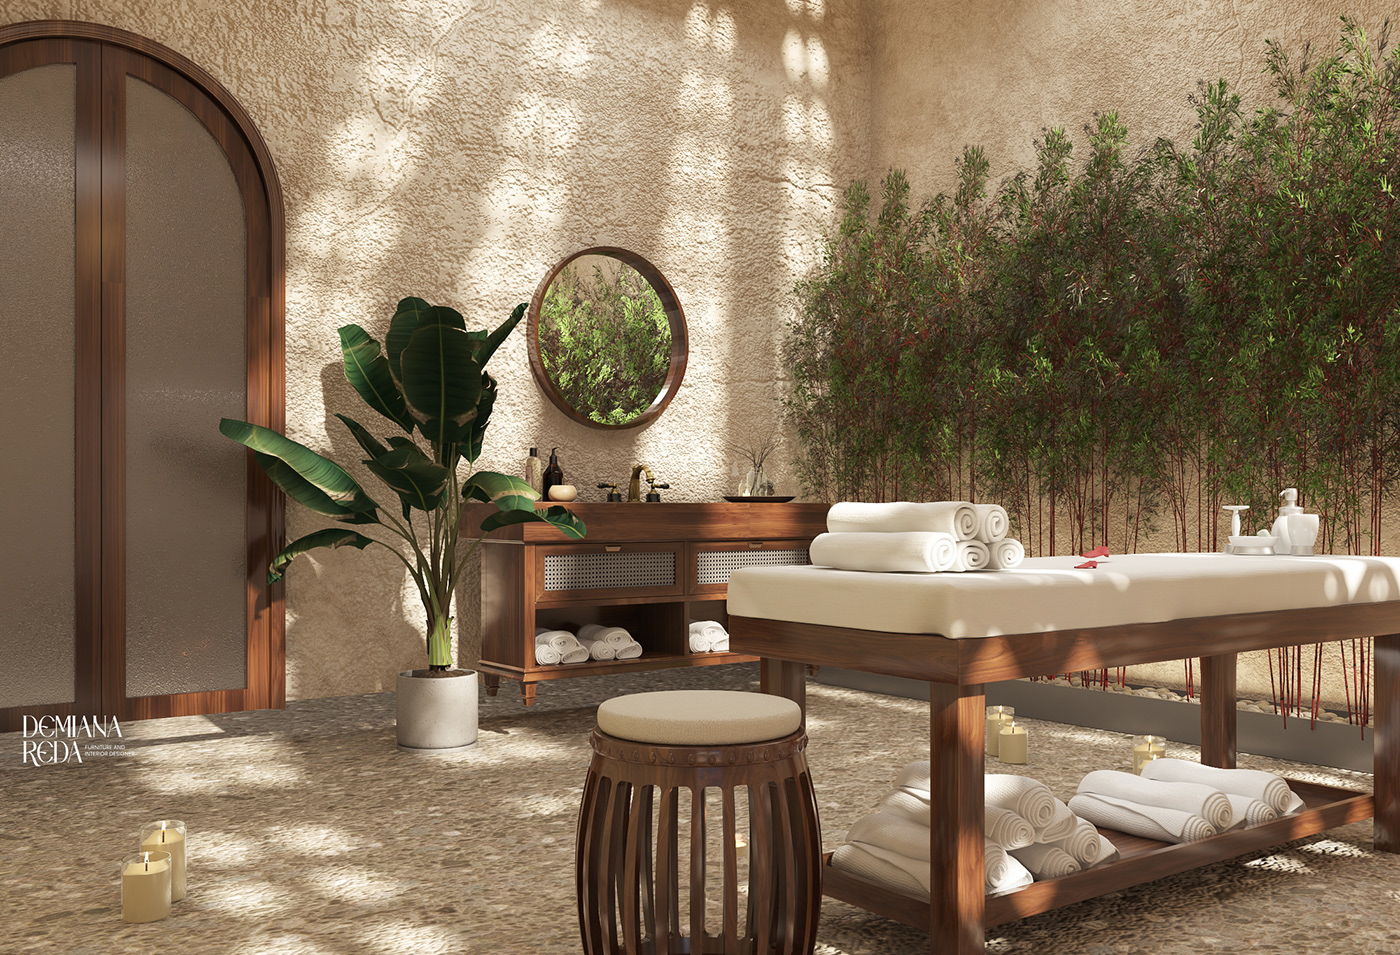 3dmodling environmental exterior Interior Jakuzzi massage resort restaurant Spa